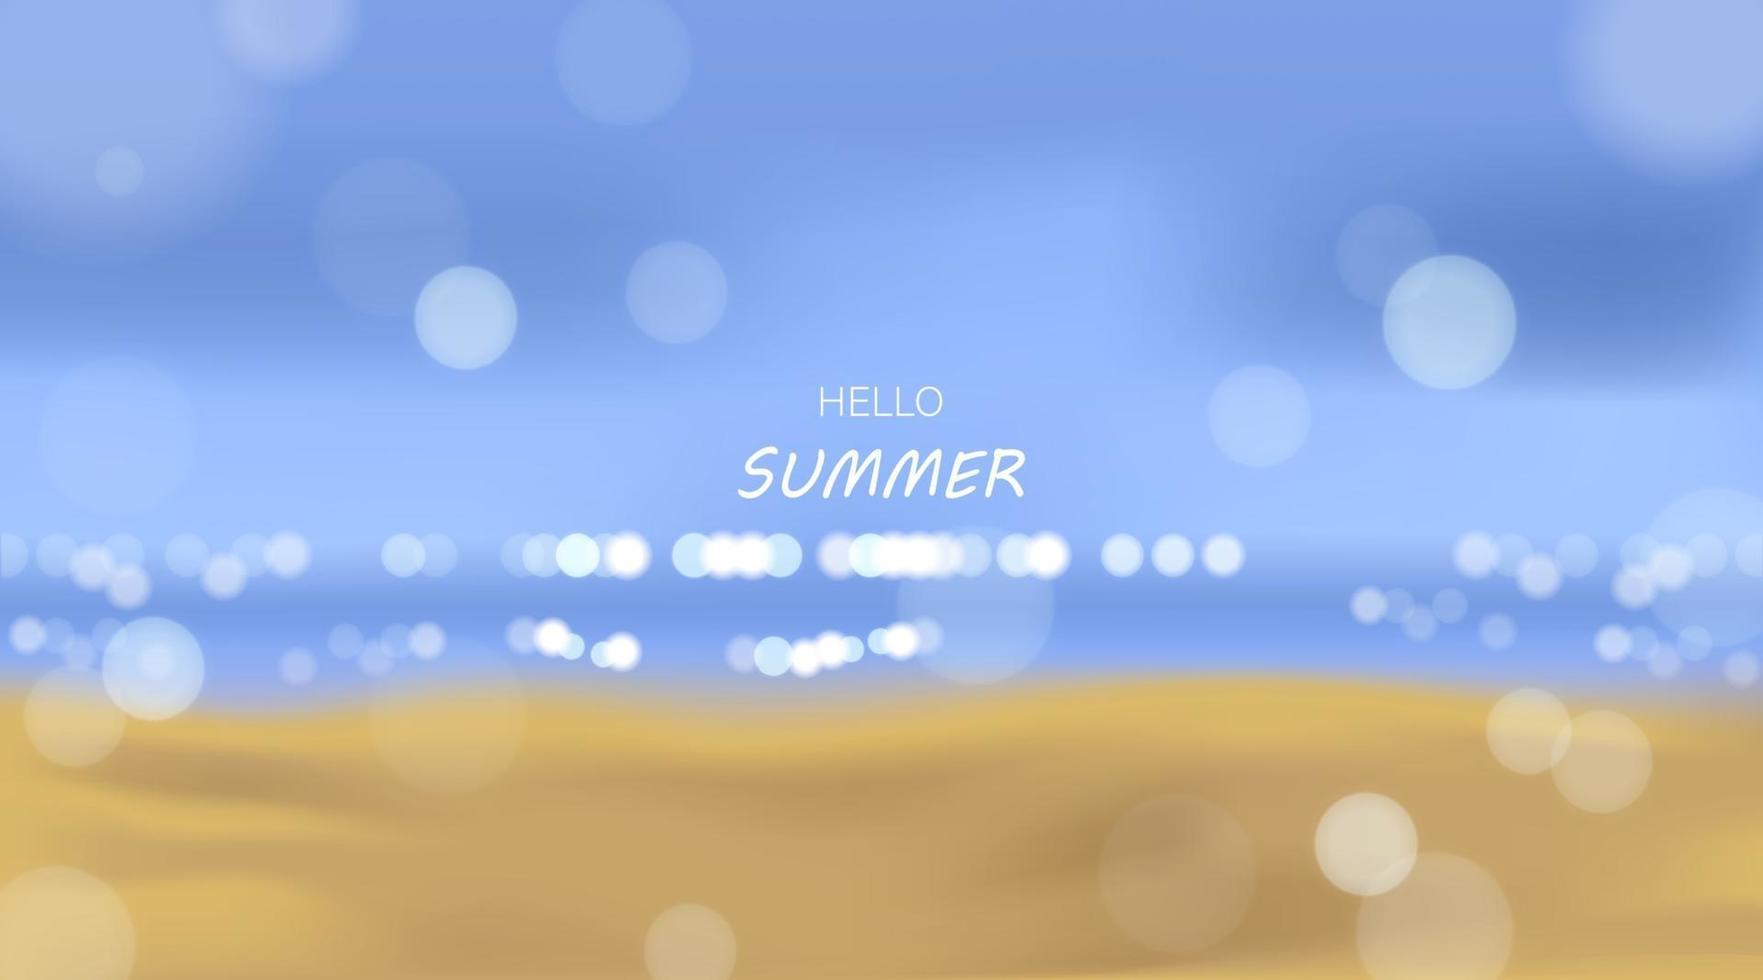 spiaggia e mare alla luce del sole, vacanze estive illustrazione vettoriale